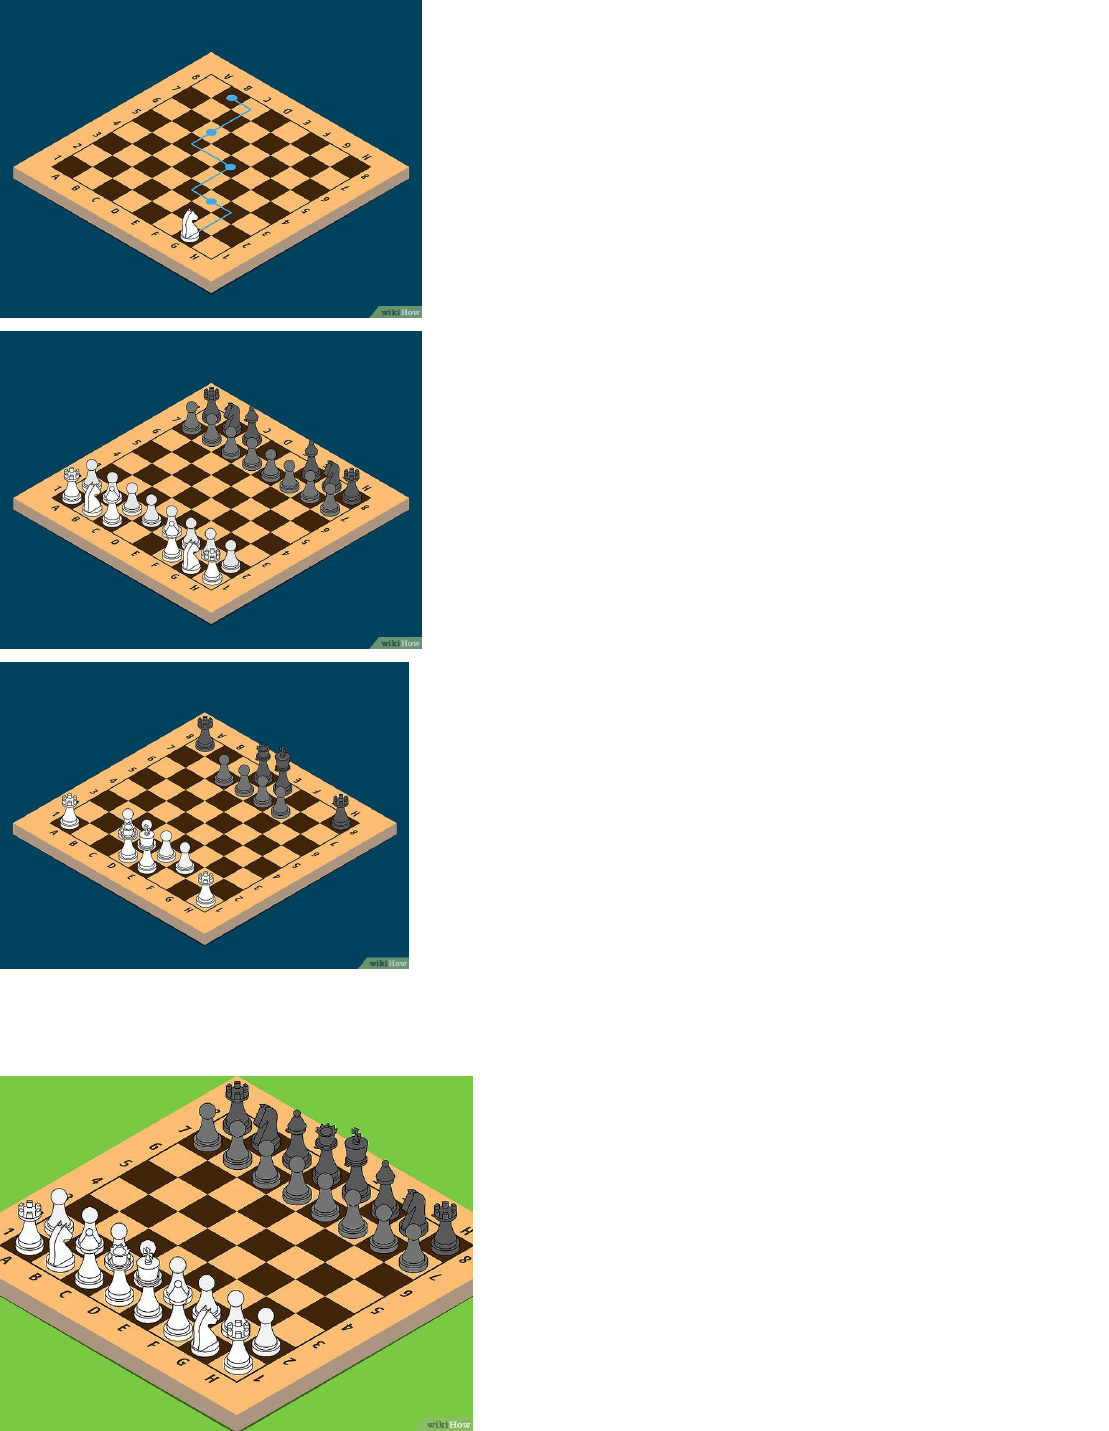 Como Jogar Xadrez (com Imagens) - wikiHow